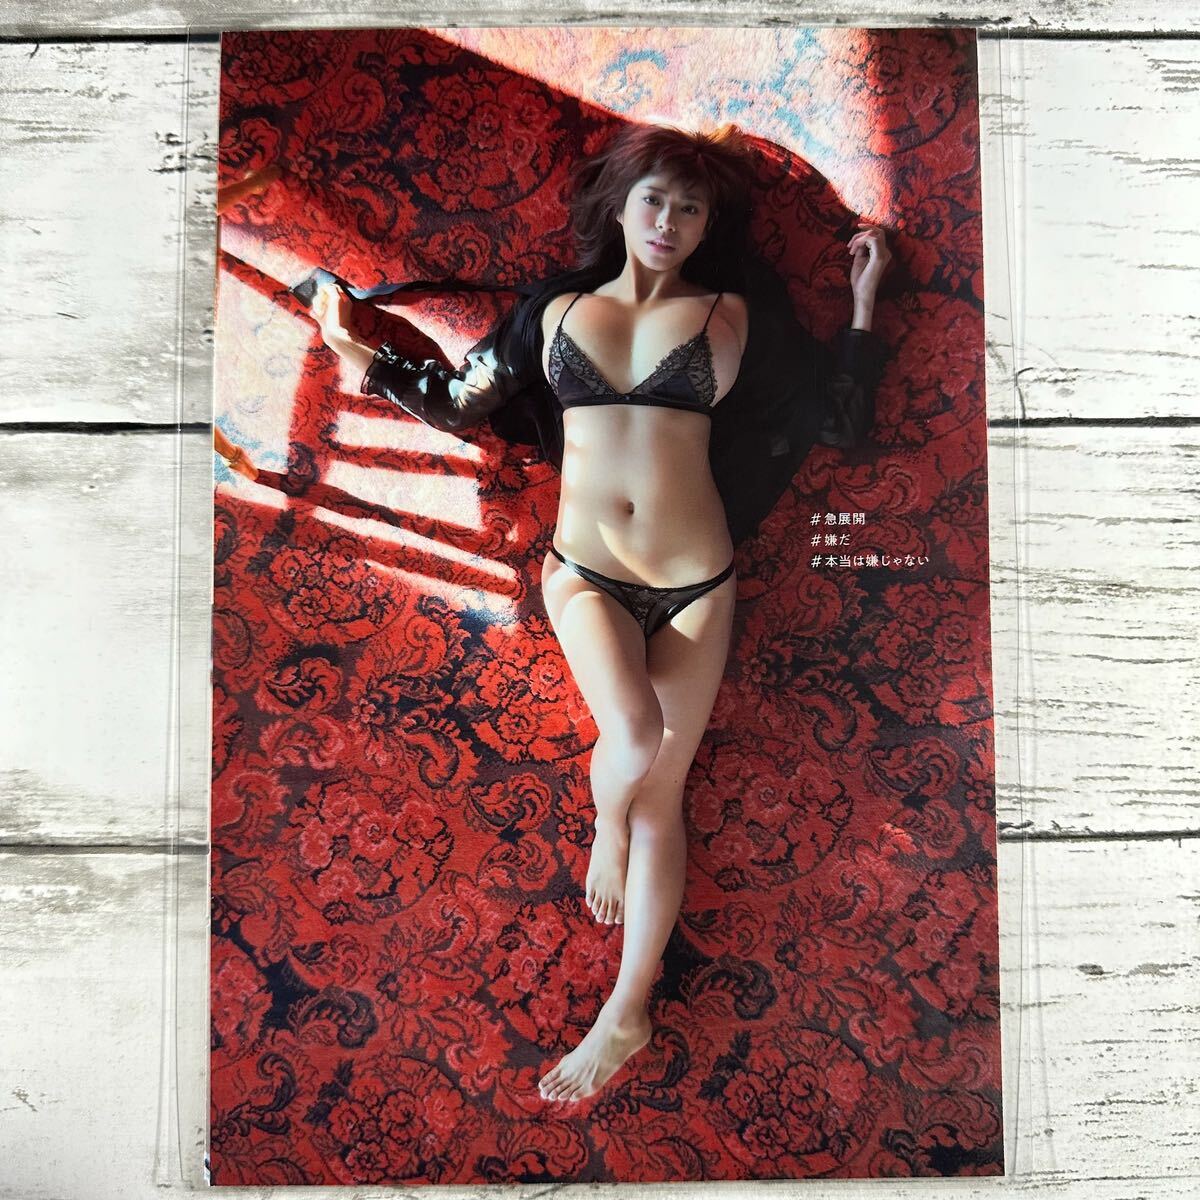 [ высокое качество ламинирование отделка ][.....] Play Boy 2018 год 8 журнал вырезки 8P B5 плёнка купальный костюм bikini model актер женщина super 